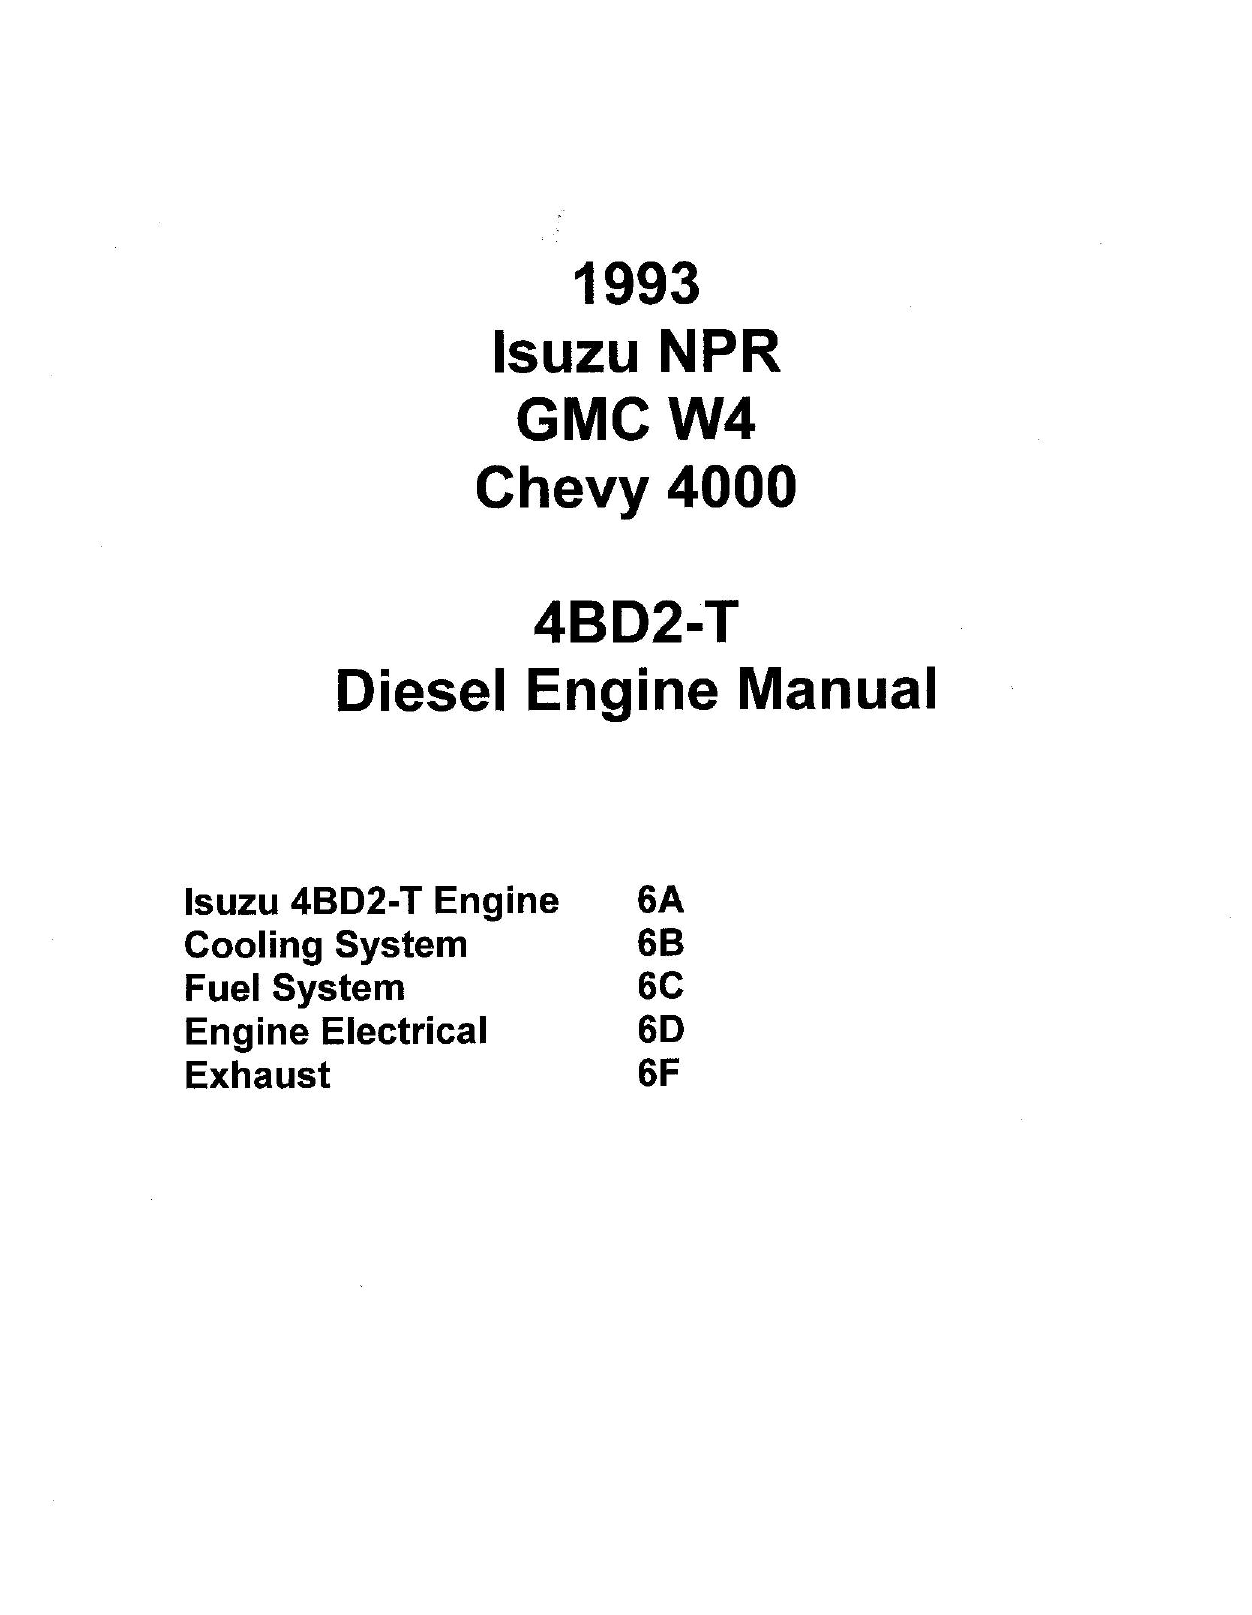 1993 Isuzu NPR GMC W4 Chevy 4000 4BDT2 diesel engine manual Preview image 1